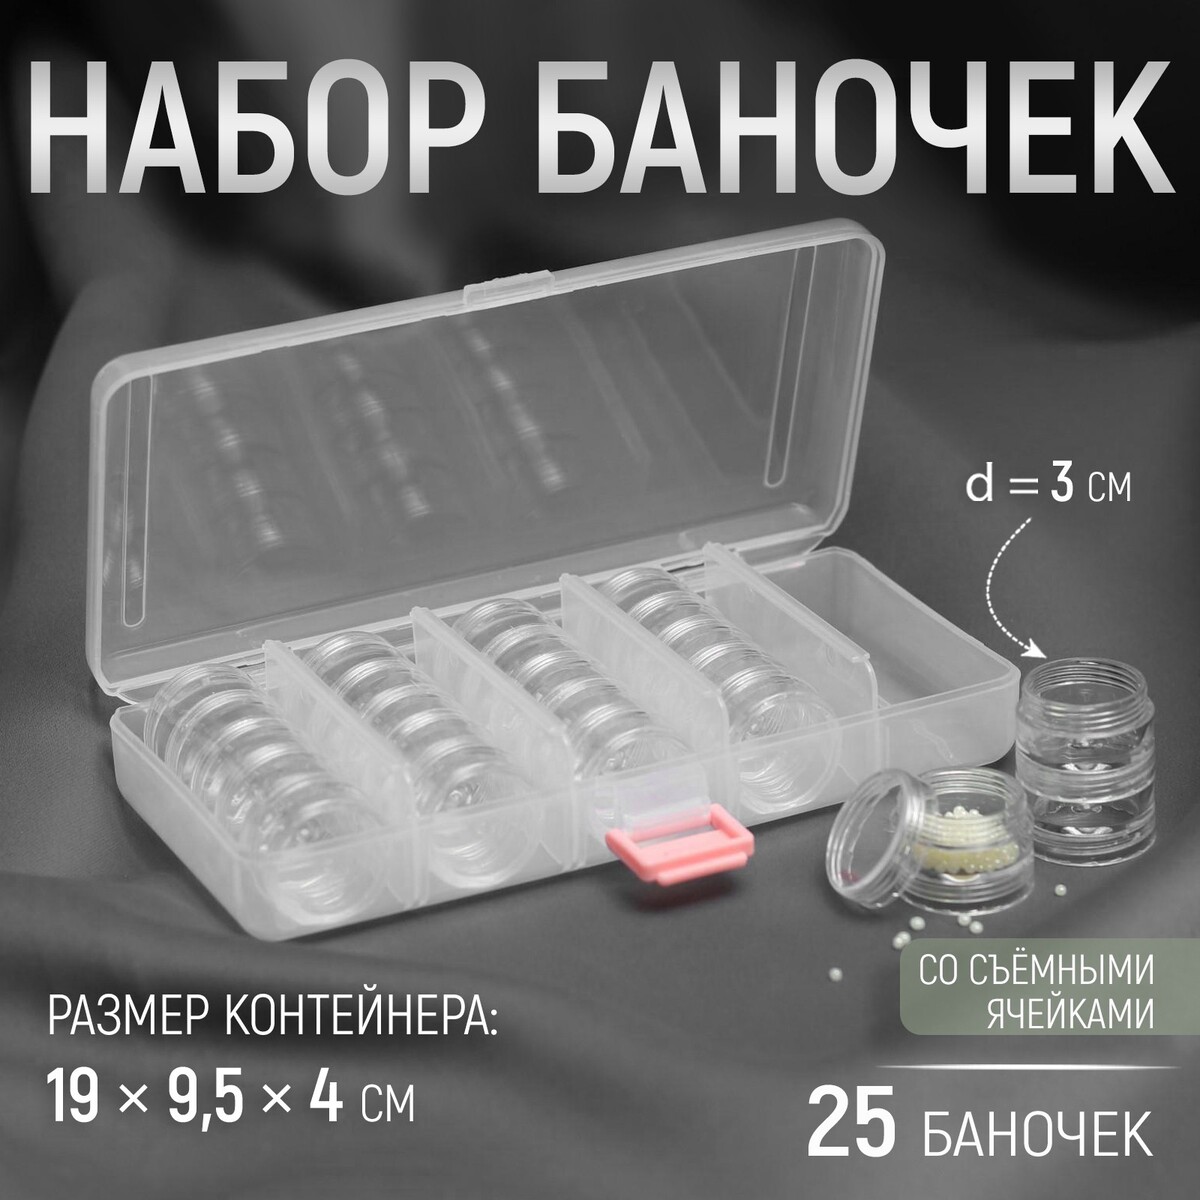 Набор баночек для рукоделия, 25 шт, d = 3 см, в контейнере со съемными ячейками, 19 × 9,5 × 4 см, цвет прозрачный